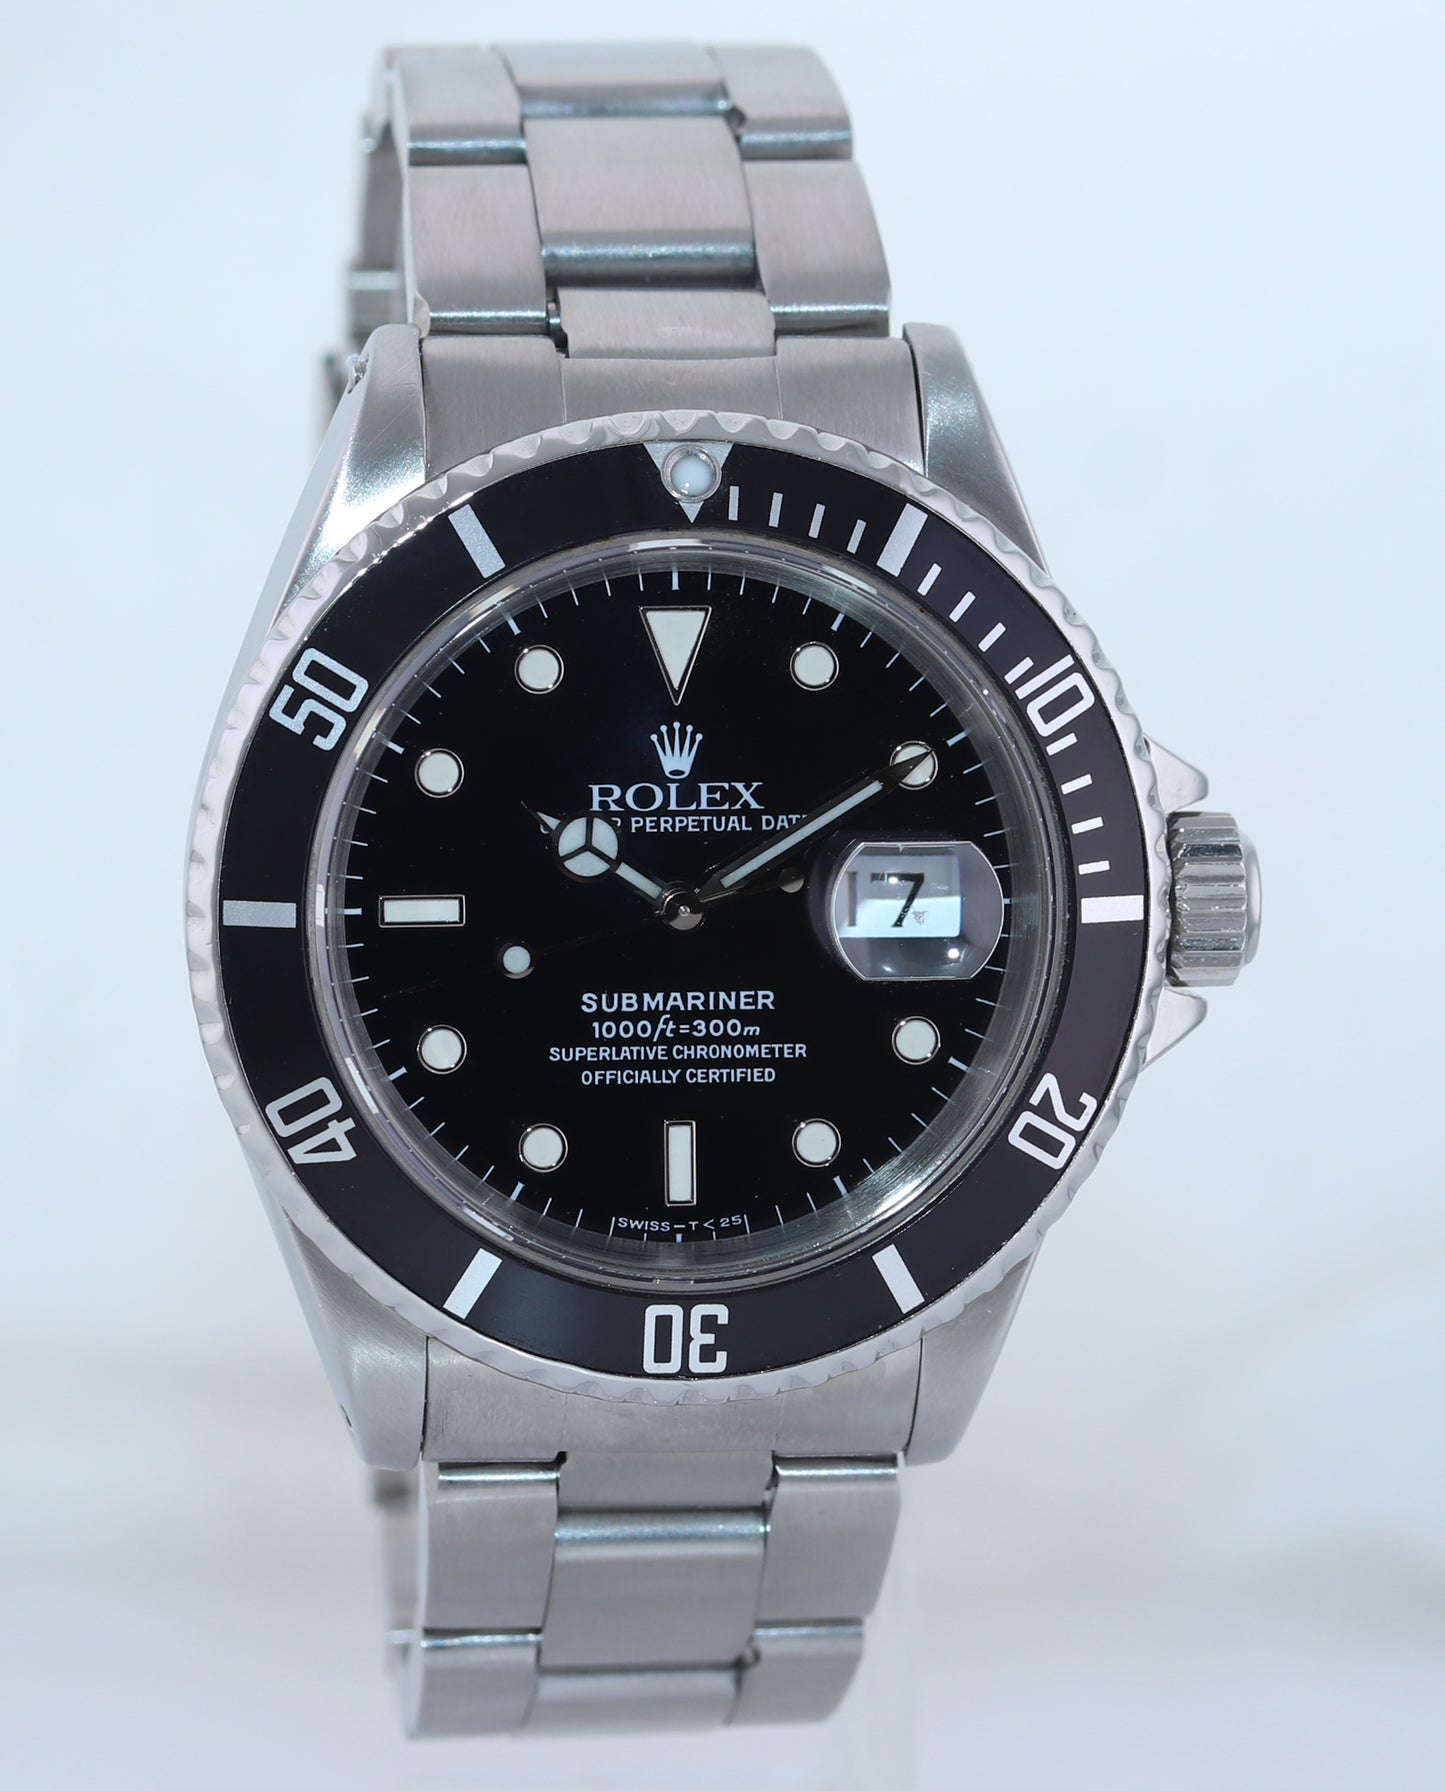 Rolex Submariner Date 16610 Steel Black 40mm Oyster Tritium Watch Box